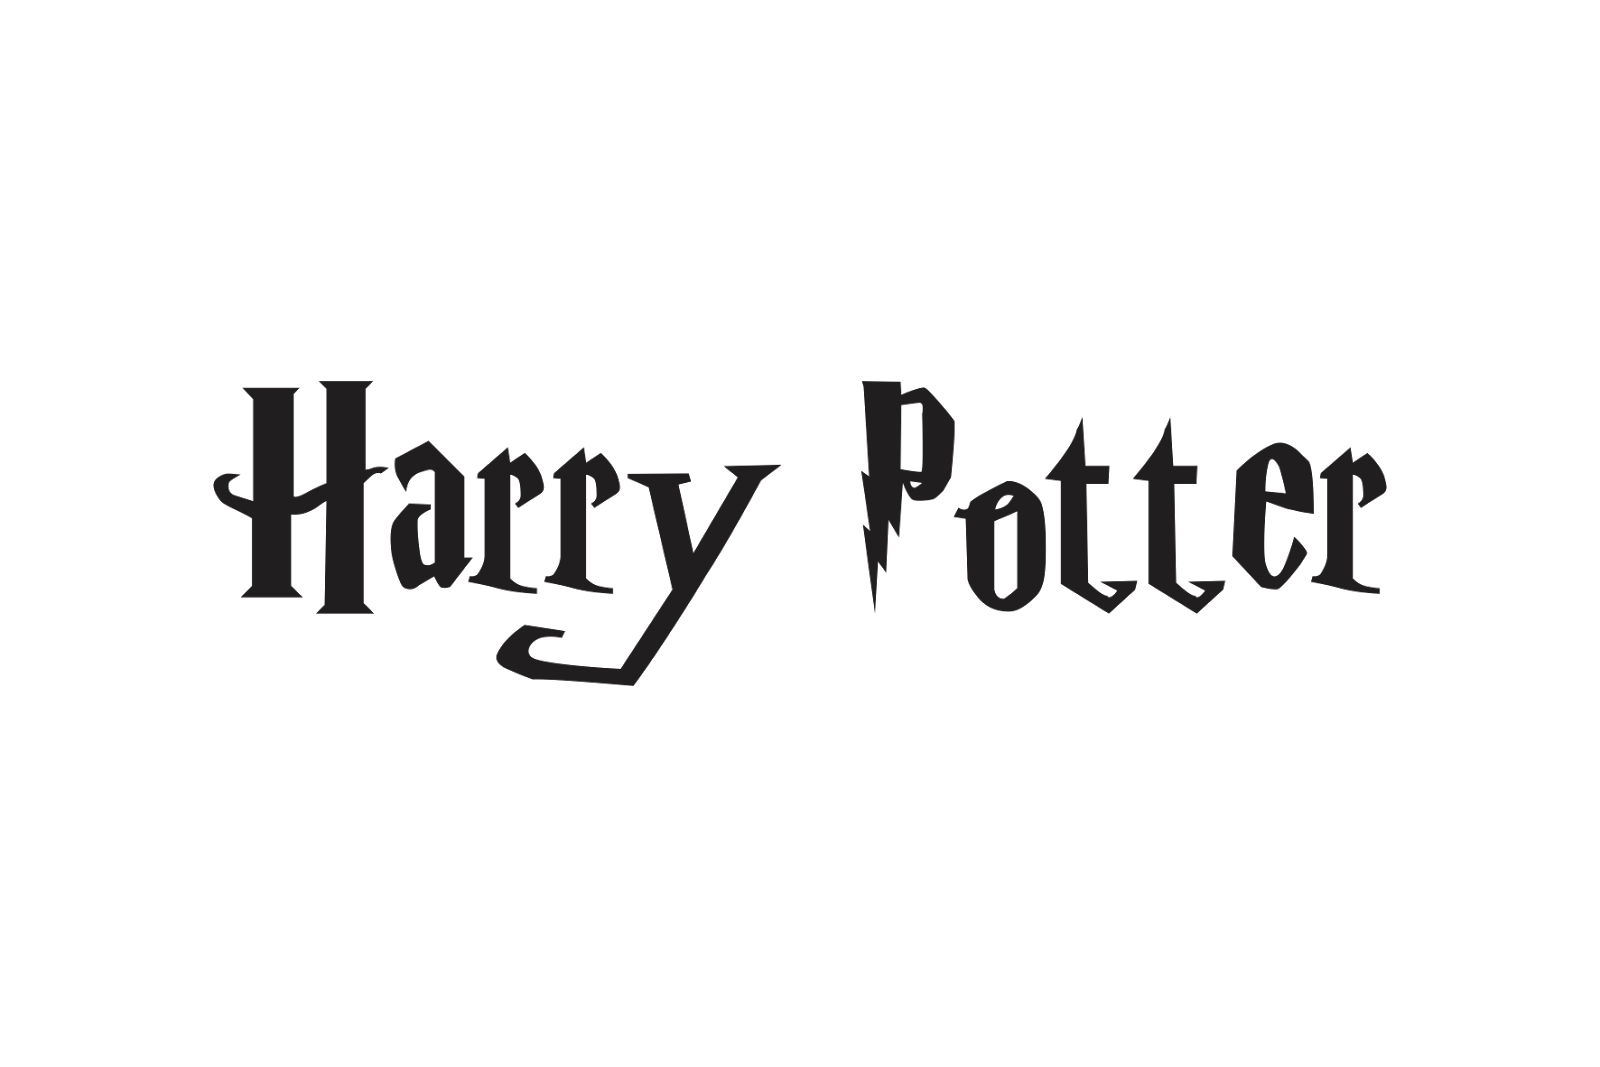 Harry Potter Golden Logo Transparent Png Stickpng Vlrengbr